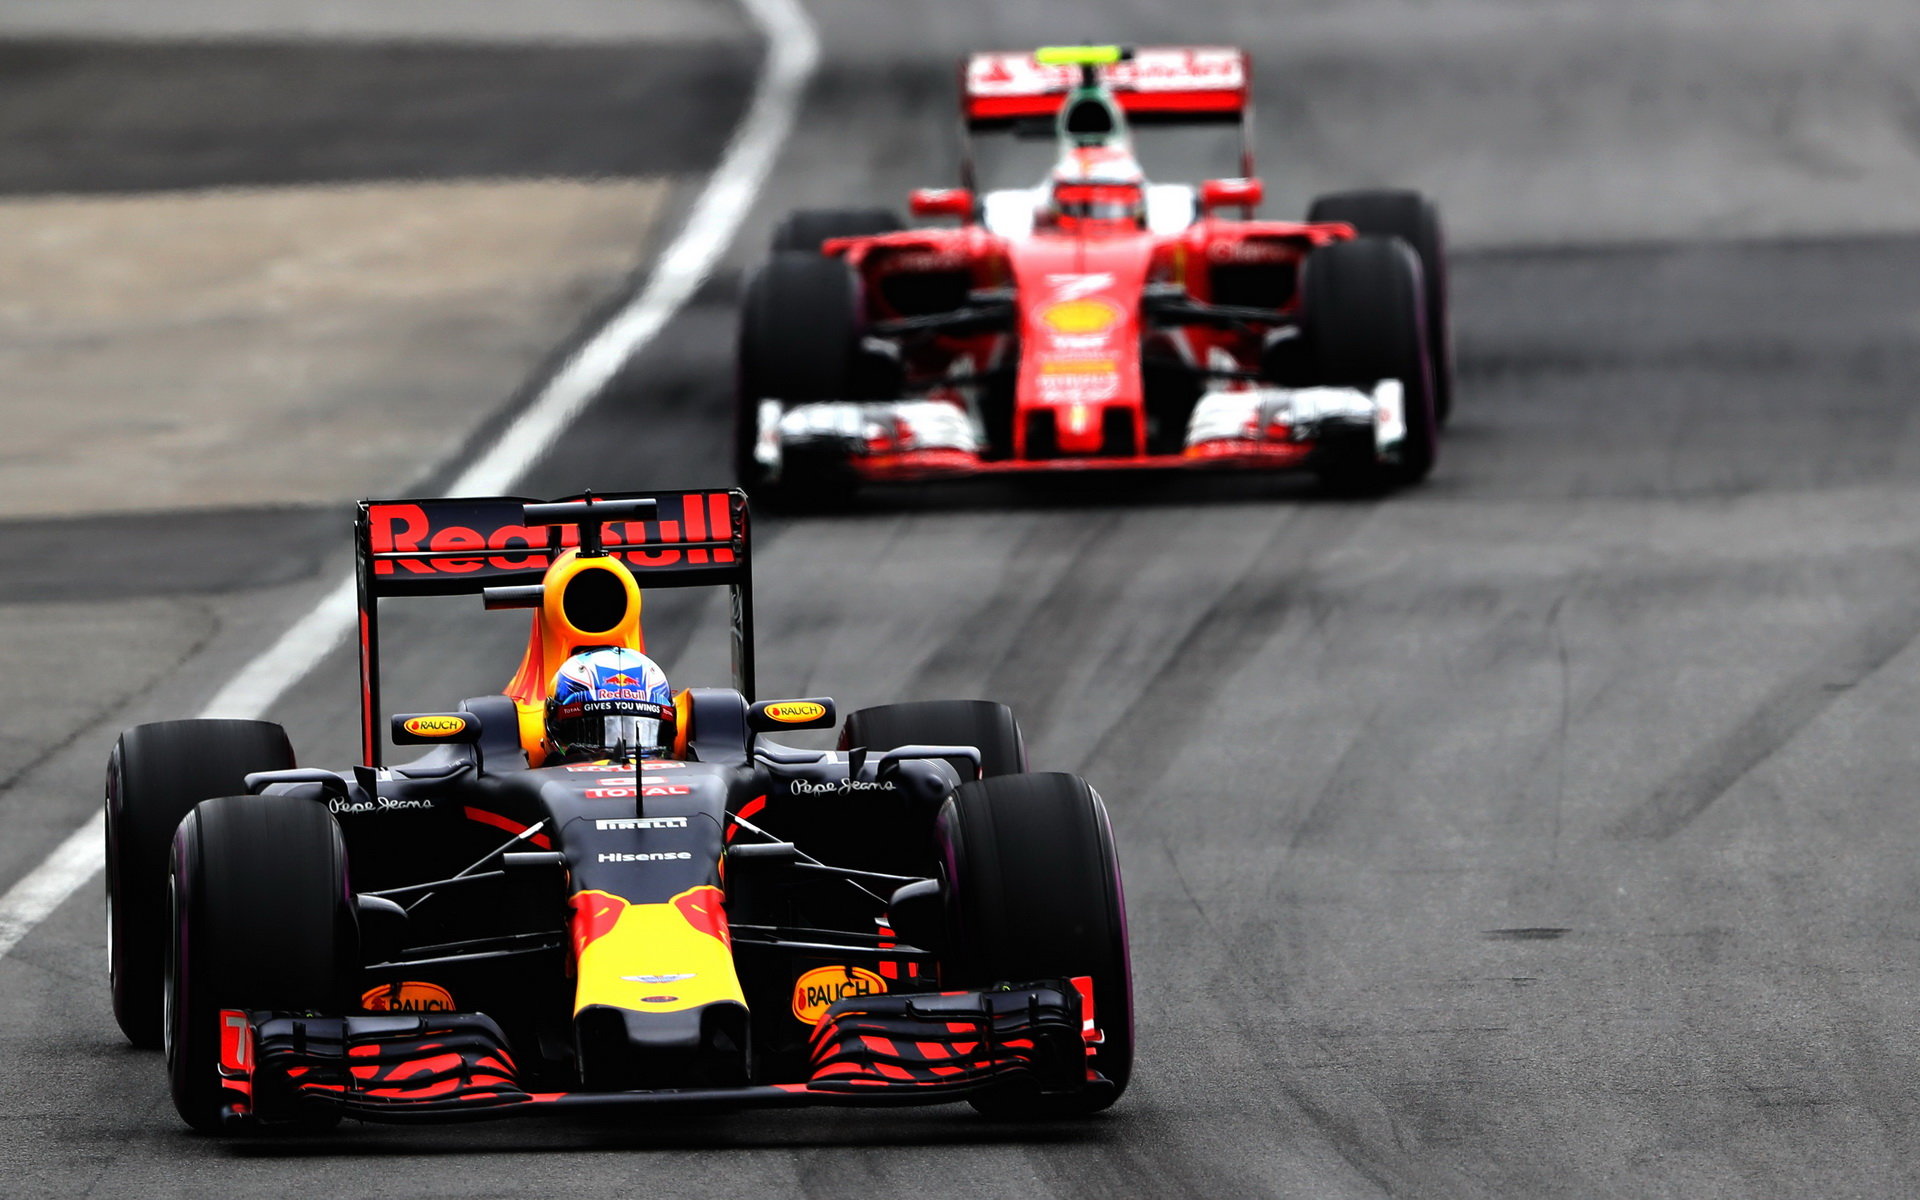 Daniel Ricciardo a Kimi v závodě v Kanadě